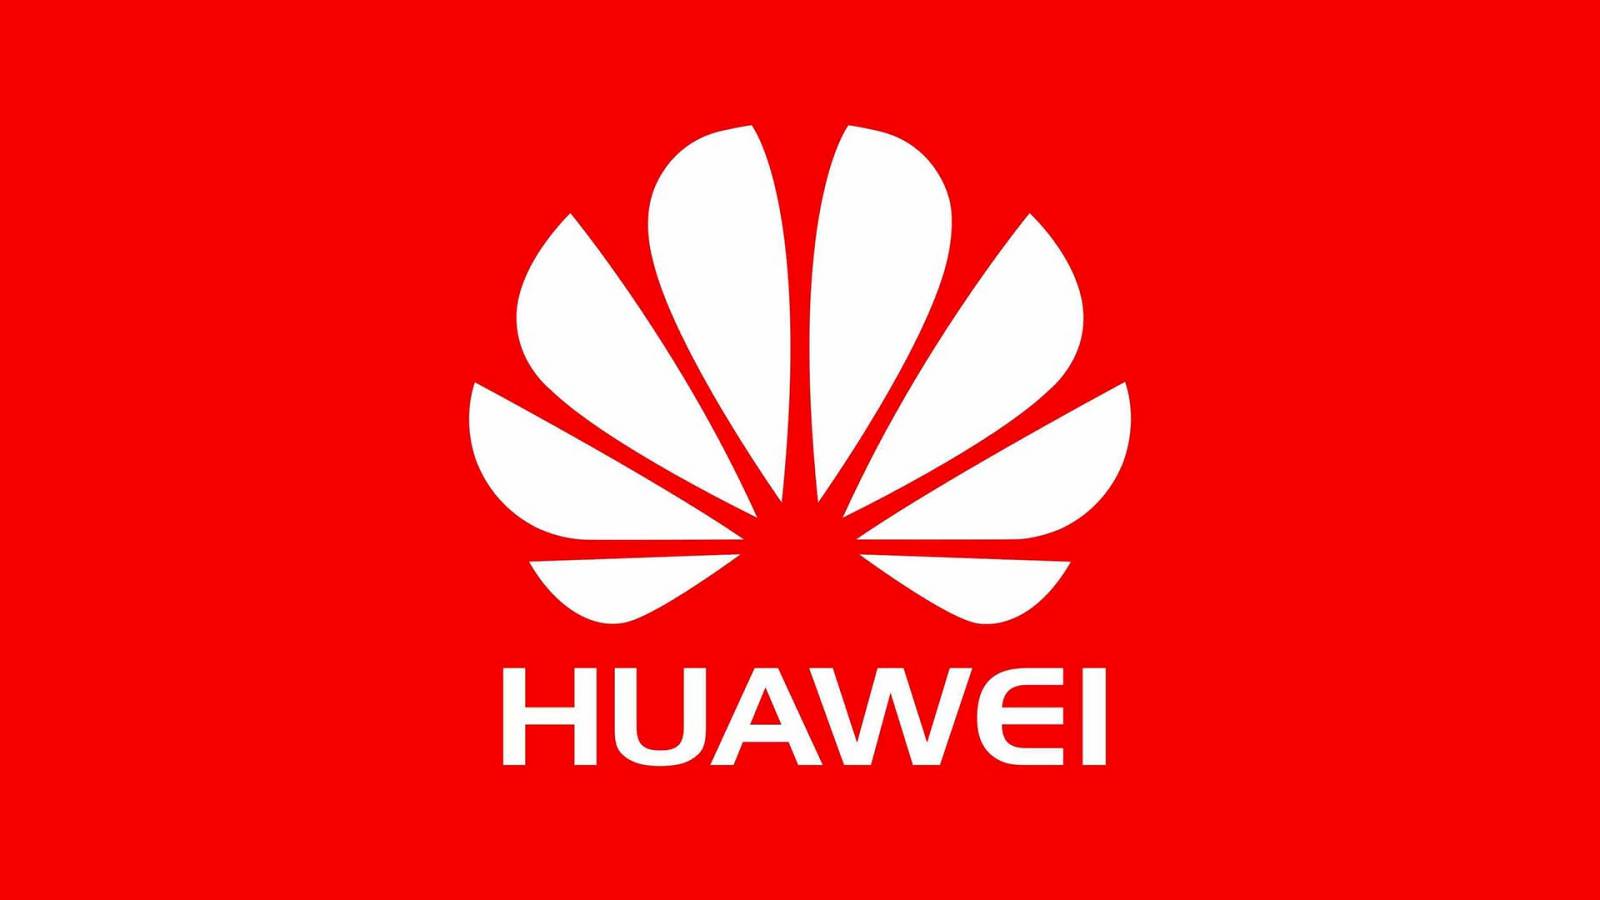 Huawei virkede fuldstændig UMULIG Overraskende mange mennesker